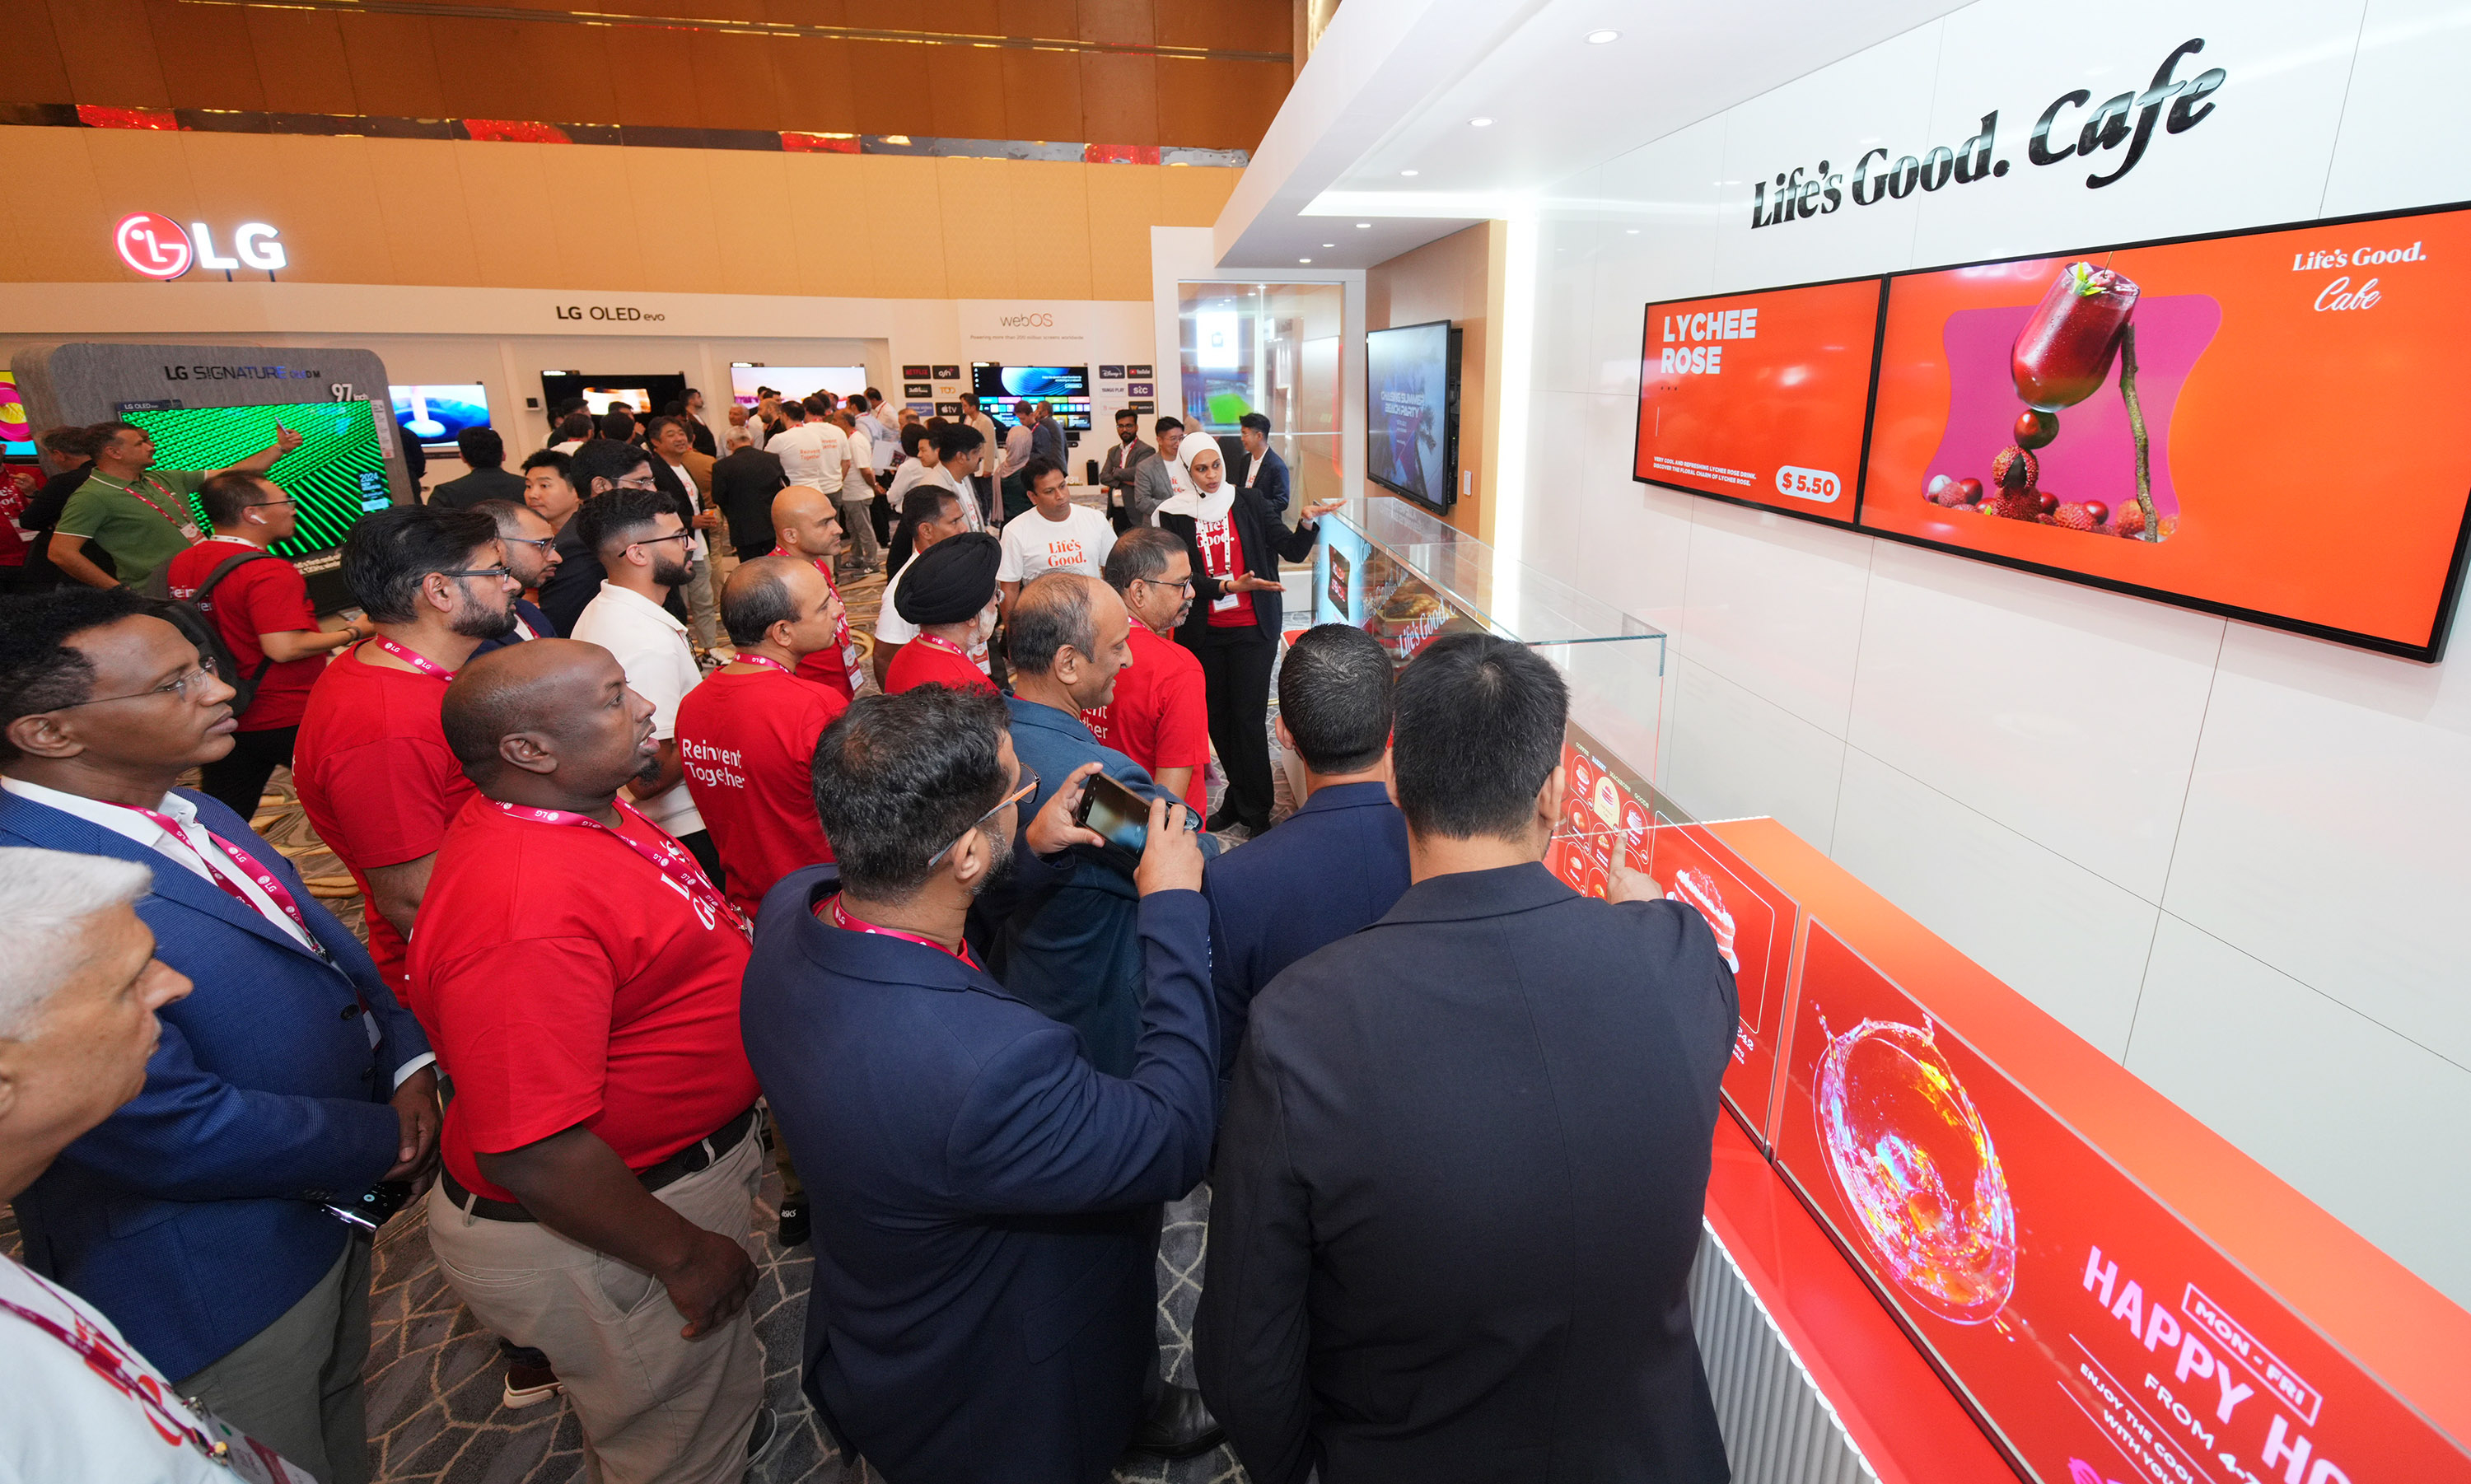 아랍에미리트(UAE) 아부다비에서 열린 ‘LG 쇼케이스 2024’에 방문한 참가자들이 LG전자가 마련한 ‘Life’s Good 카페‘ 전시존을 둘러보고 있다. LG전자 제공